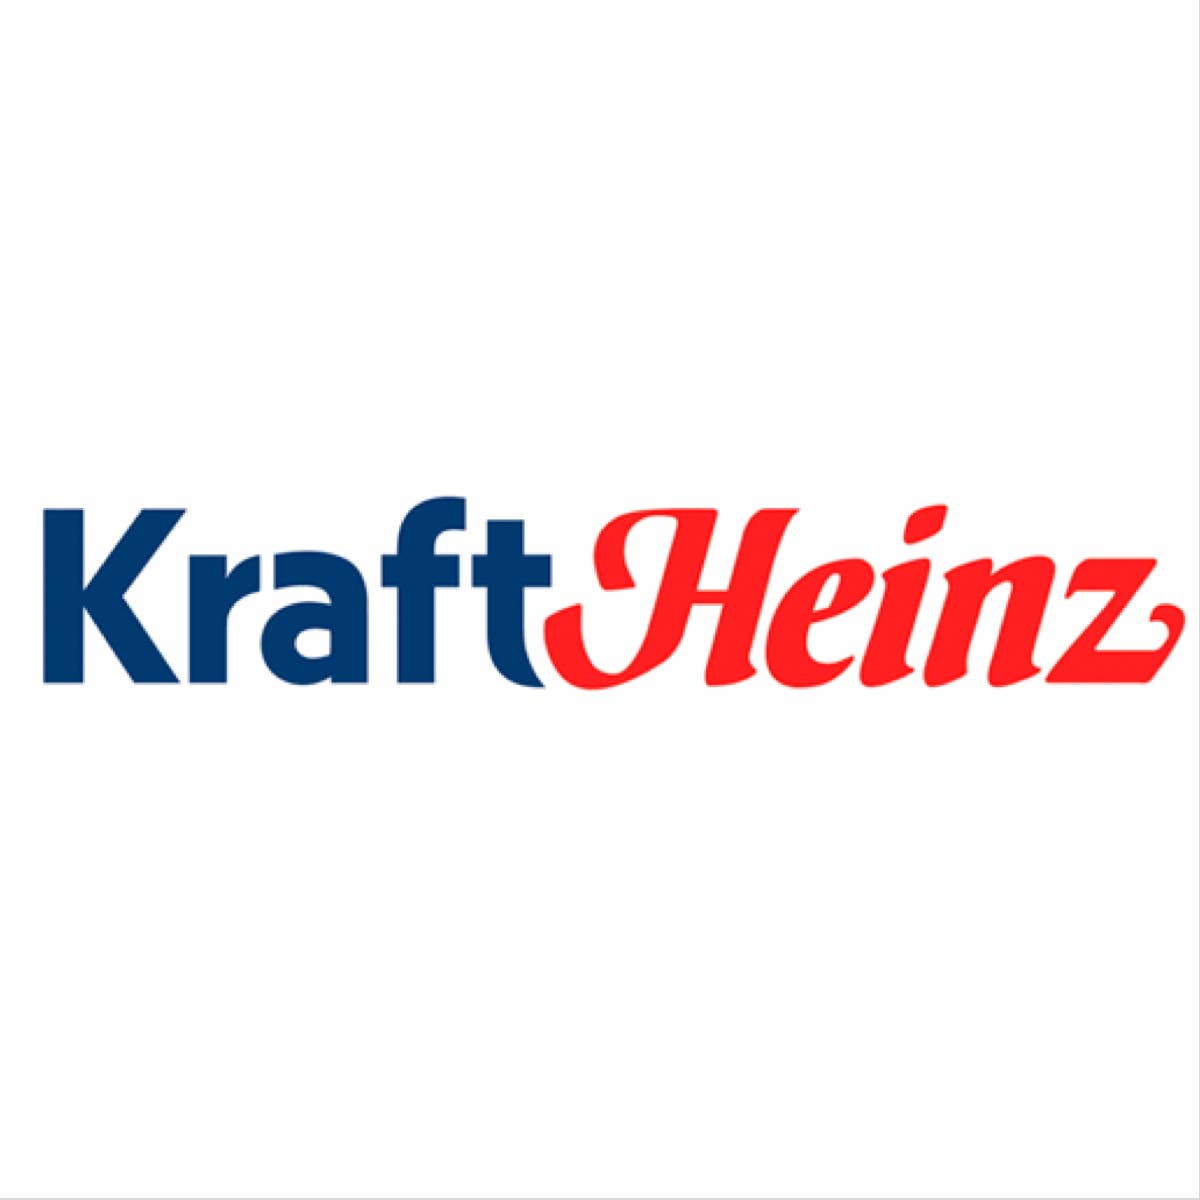 Kraft Heinz nombra a Carat como su socio de agencia de medios global